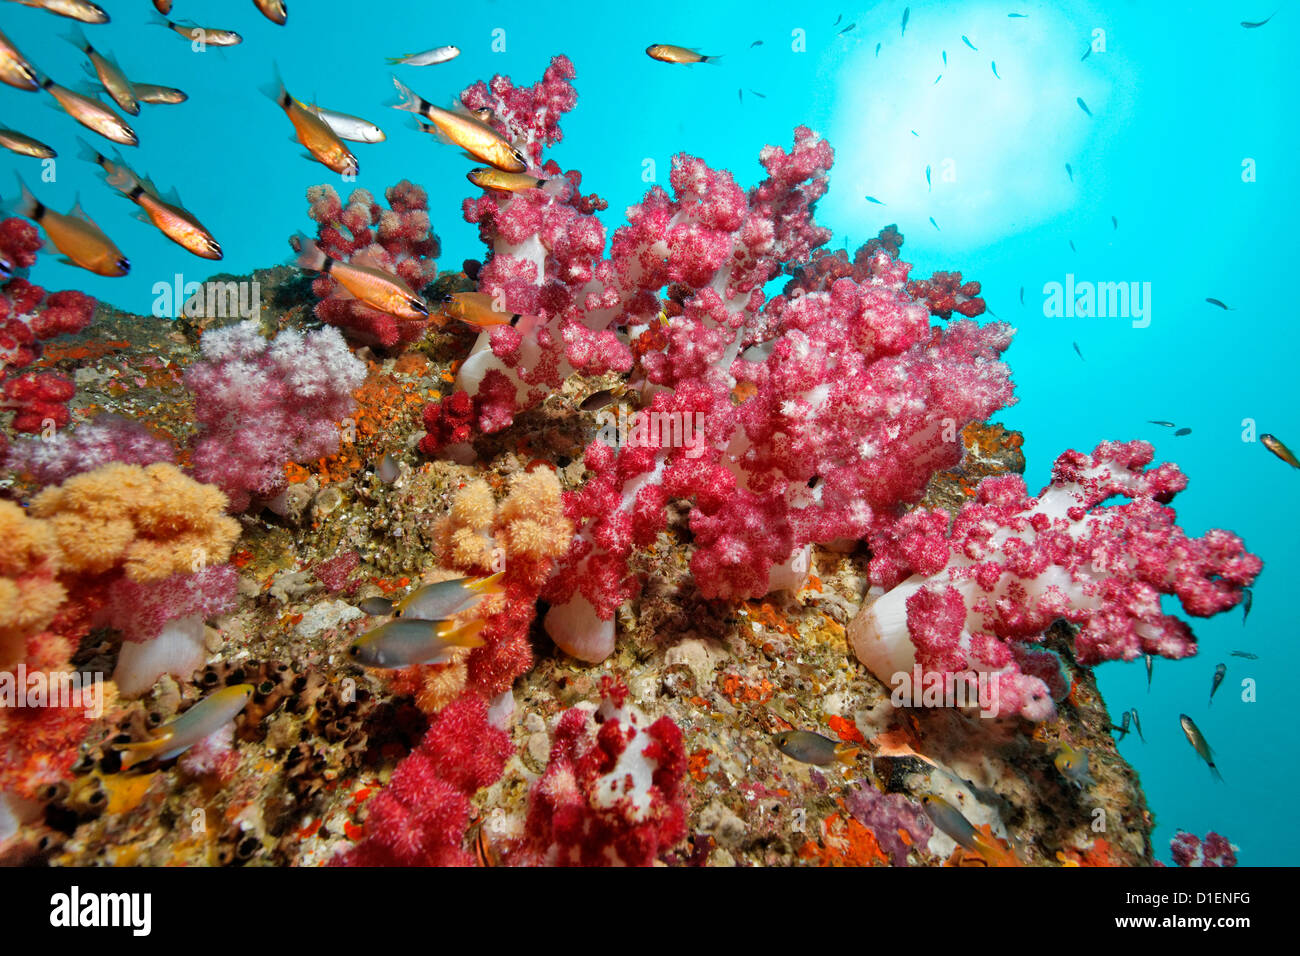 Scuola di fiore (cardinalfish Apogon fleurieu) su coralli molli, Mirbat, Oman, Oceano Indiano, ripresa subacquea Foto Stock